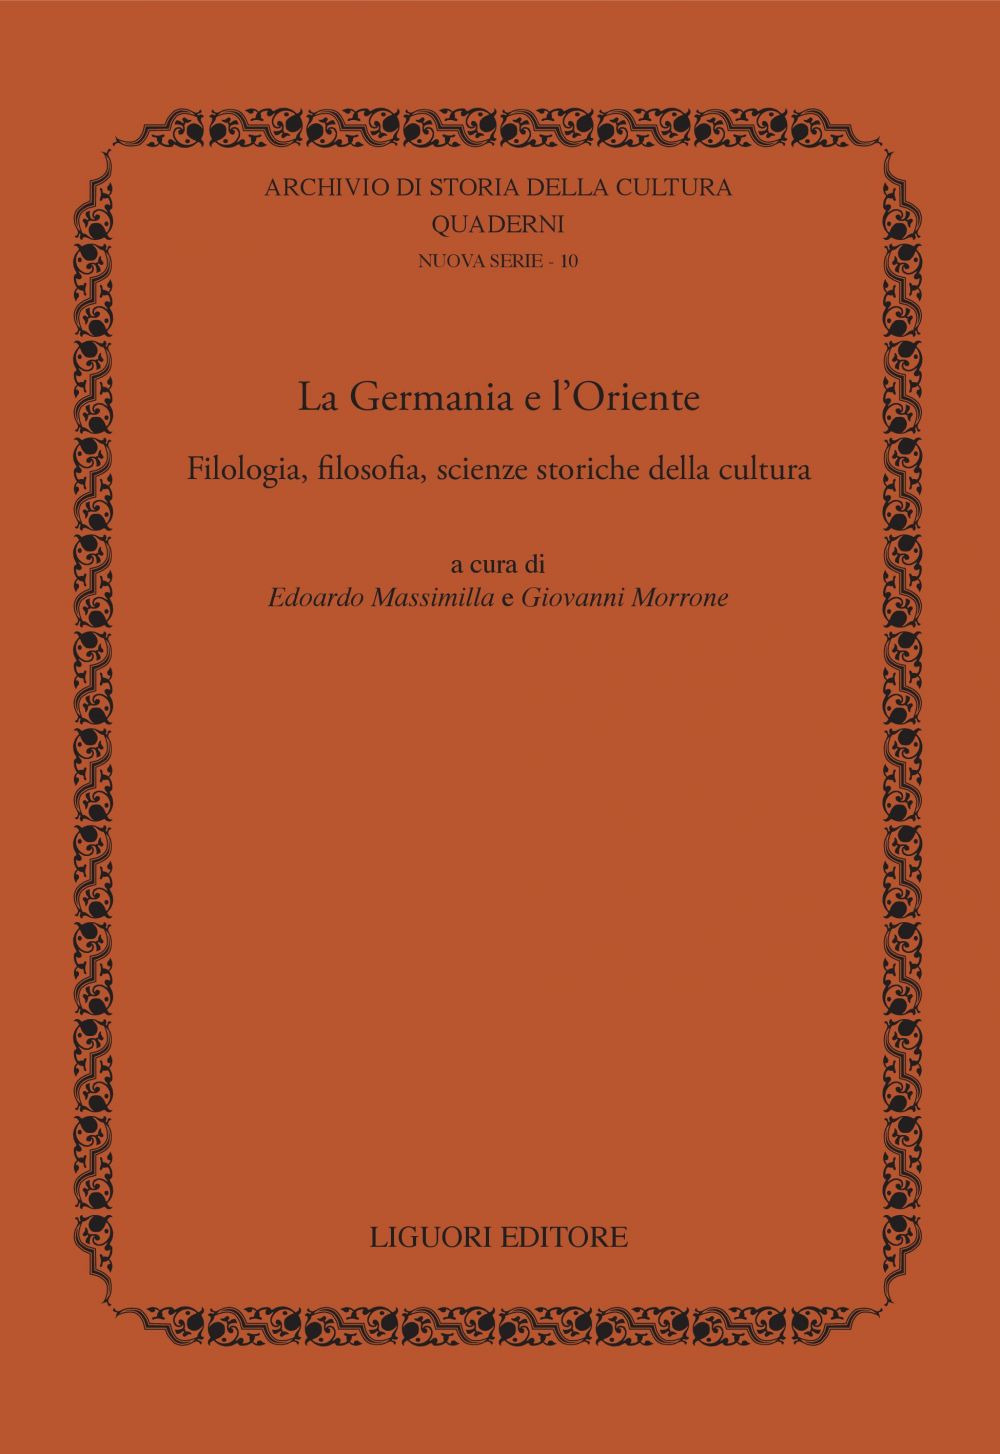 La Germania e l'Oriente. Filologia, filosofia e scienze storiche della cultura